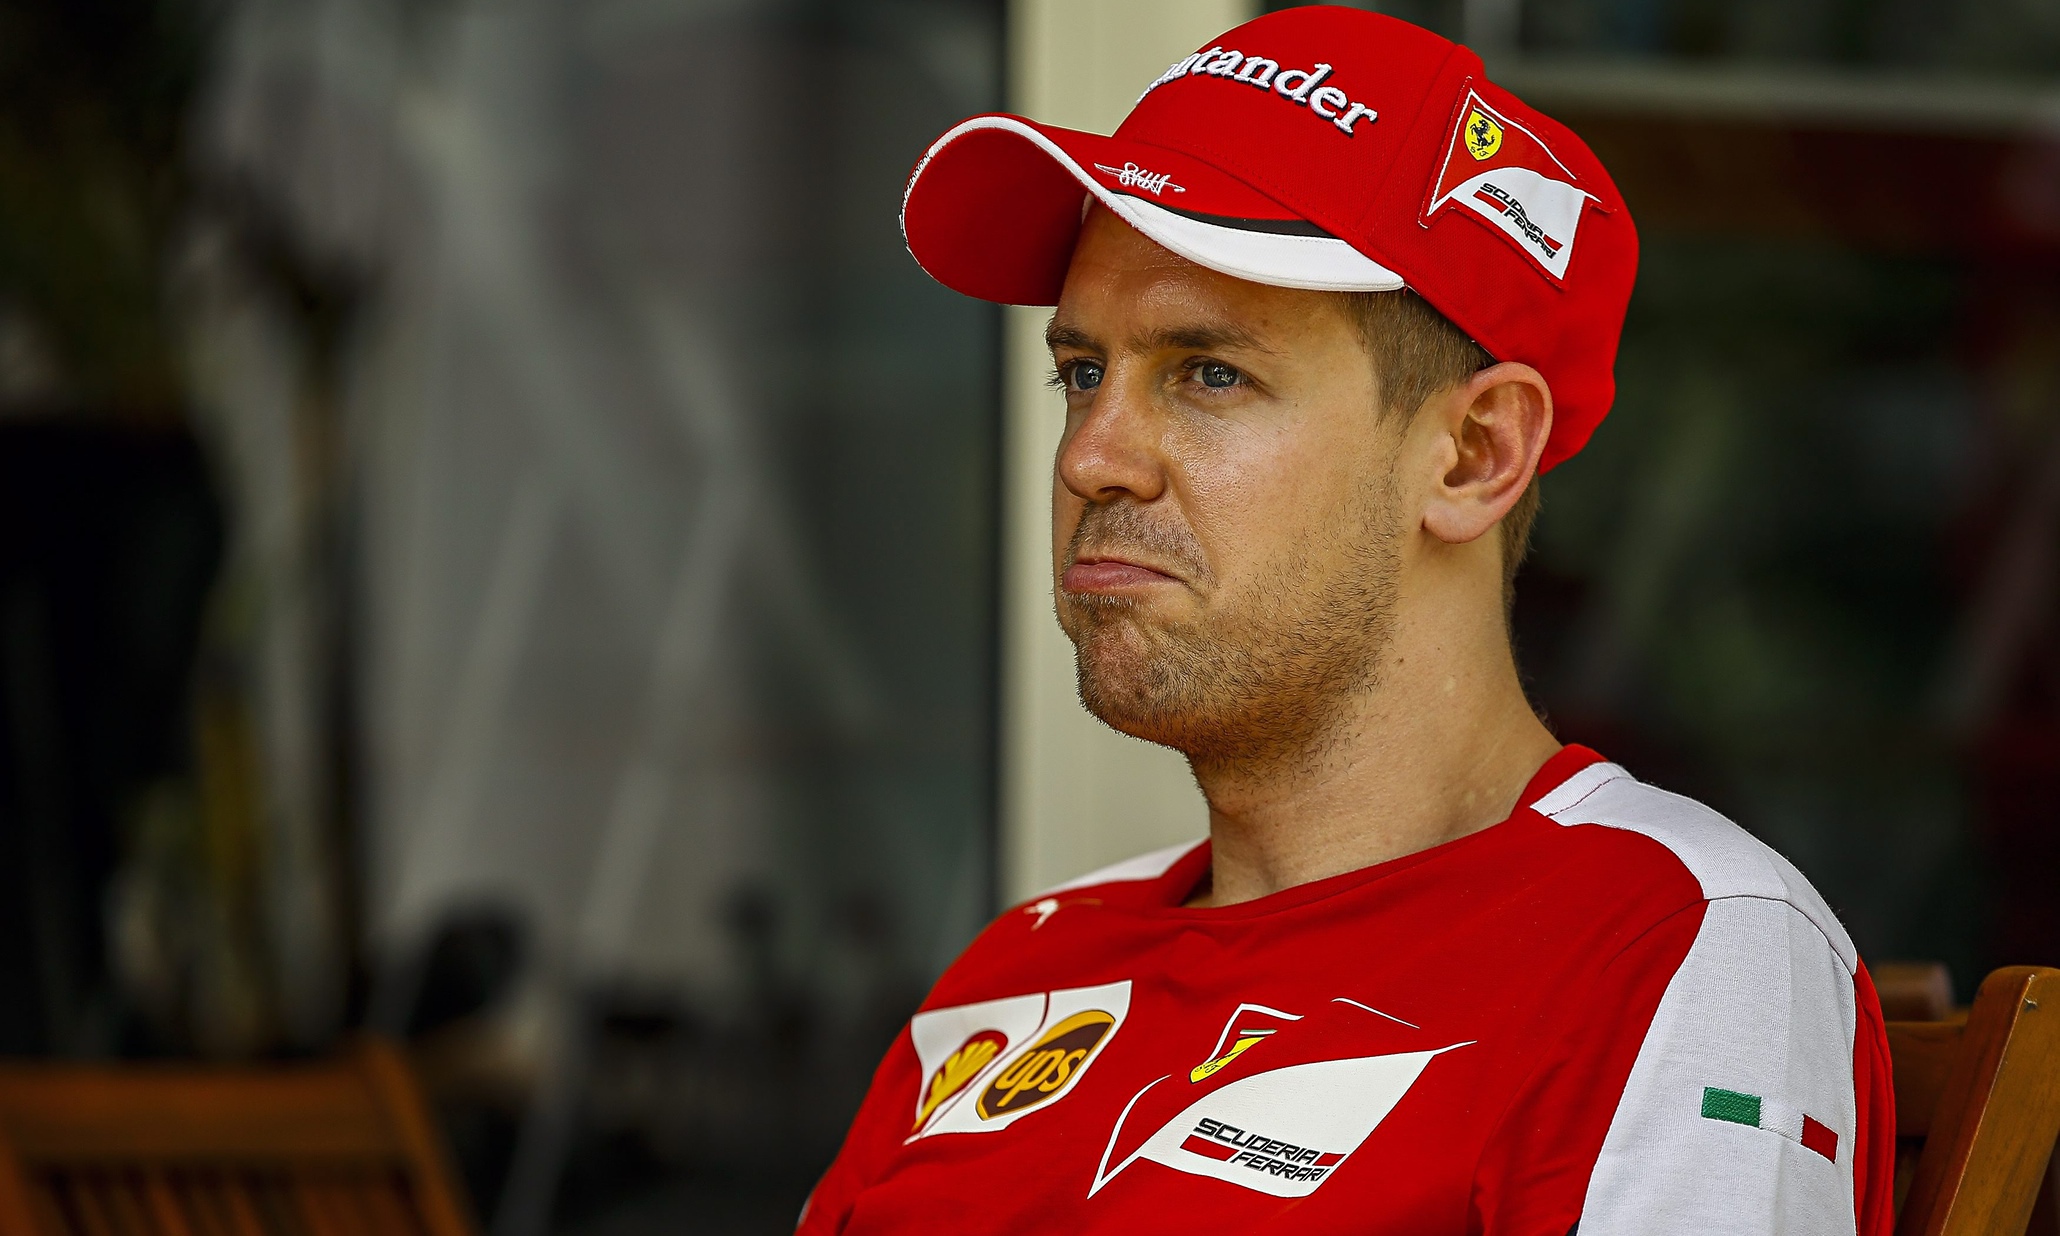 http://static.guim.co.uk/sys-images/Sport/Pix/pictures/2015/3/26/1427374041064/Sebastian-Vettel-009.jpg